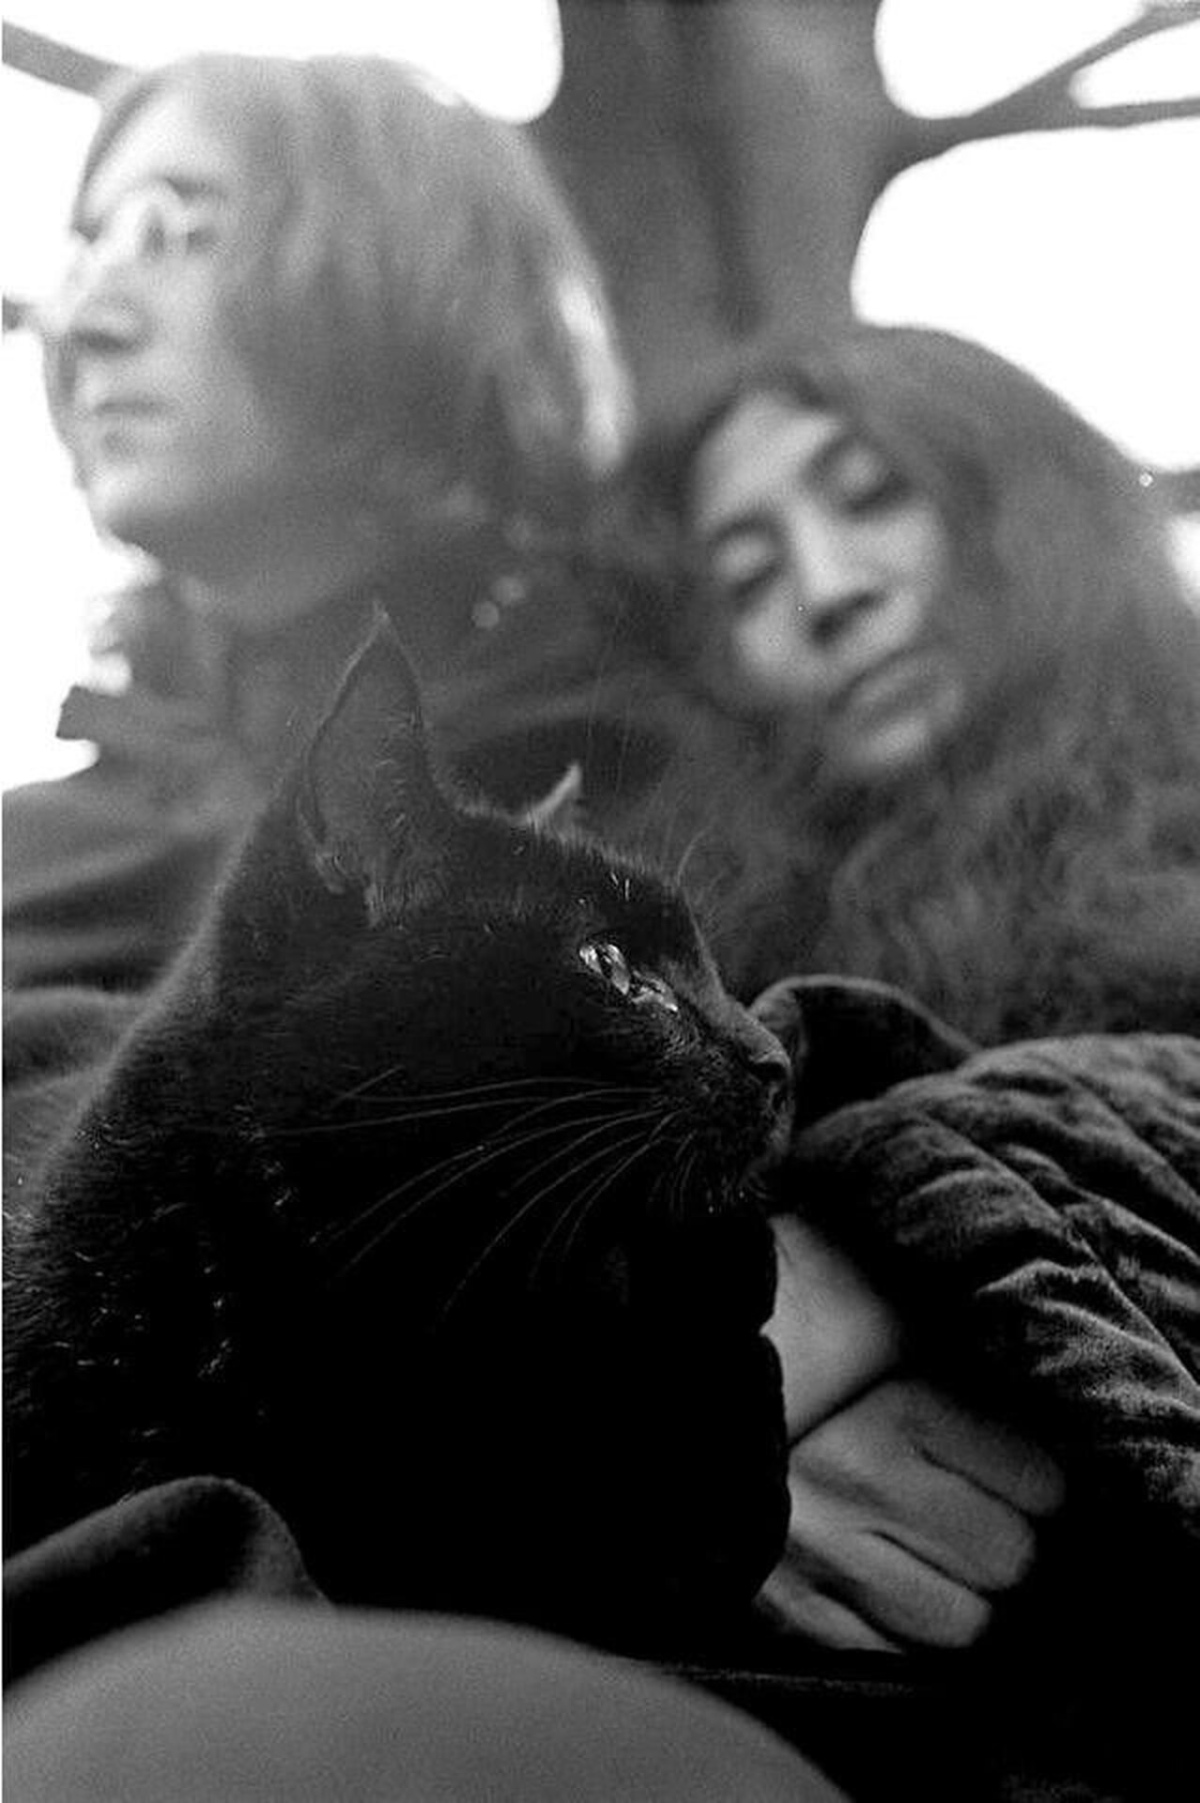 John Lennon, Yoko Ono and the Cat